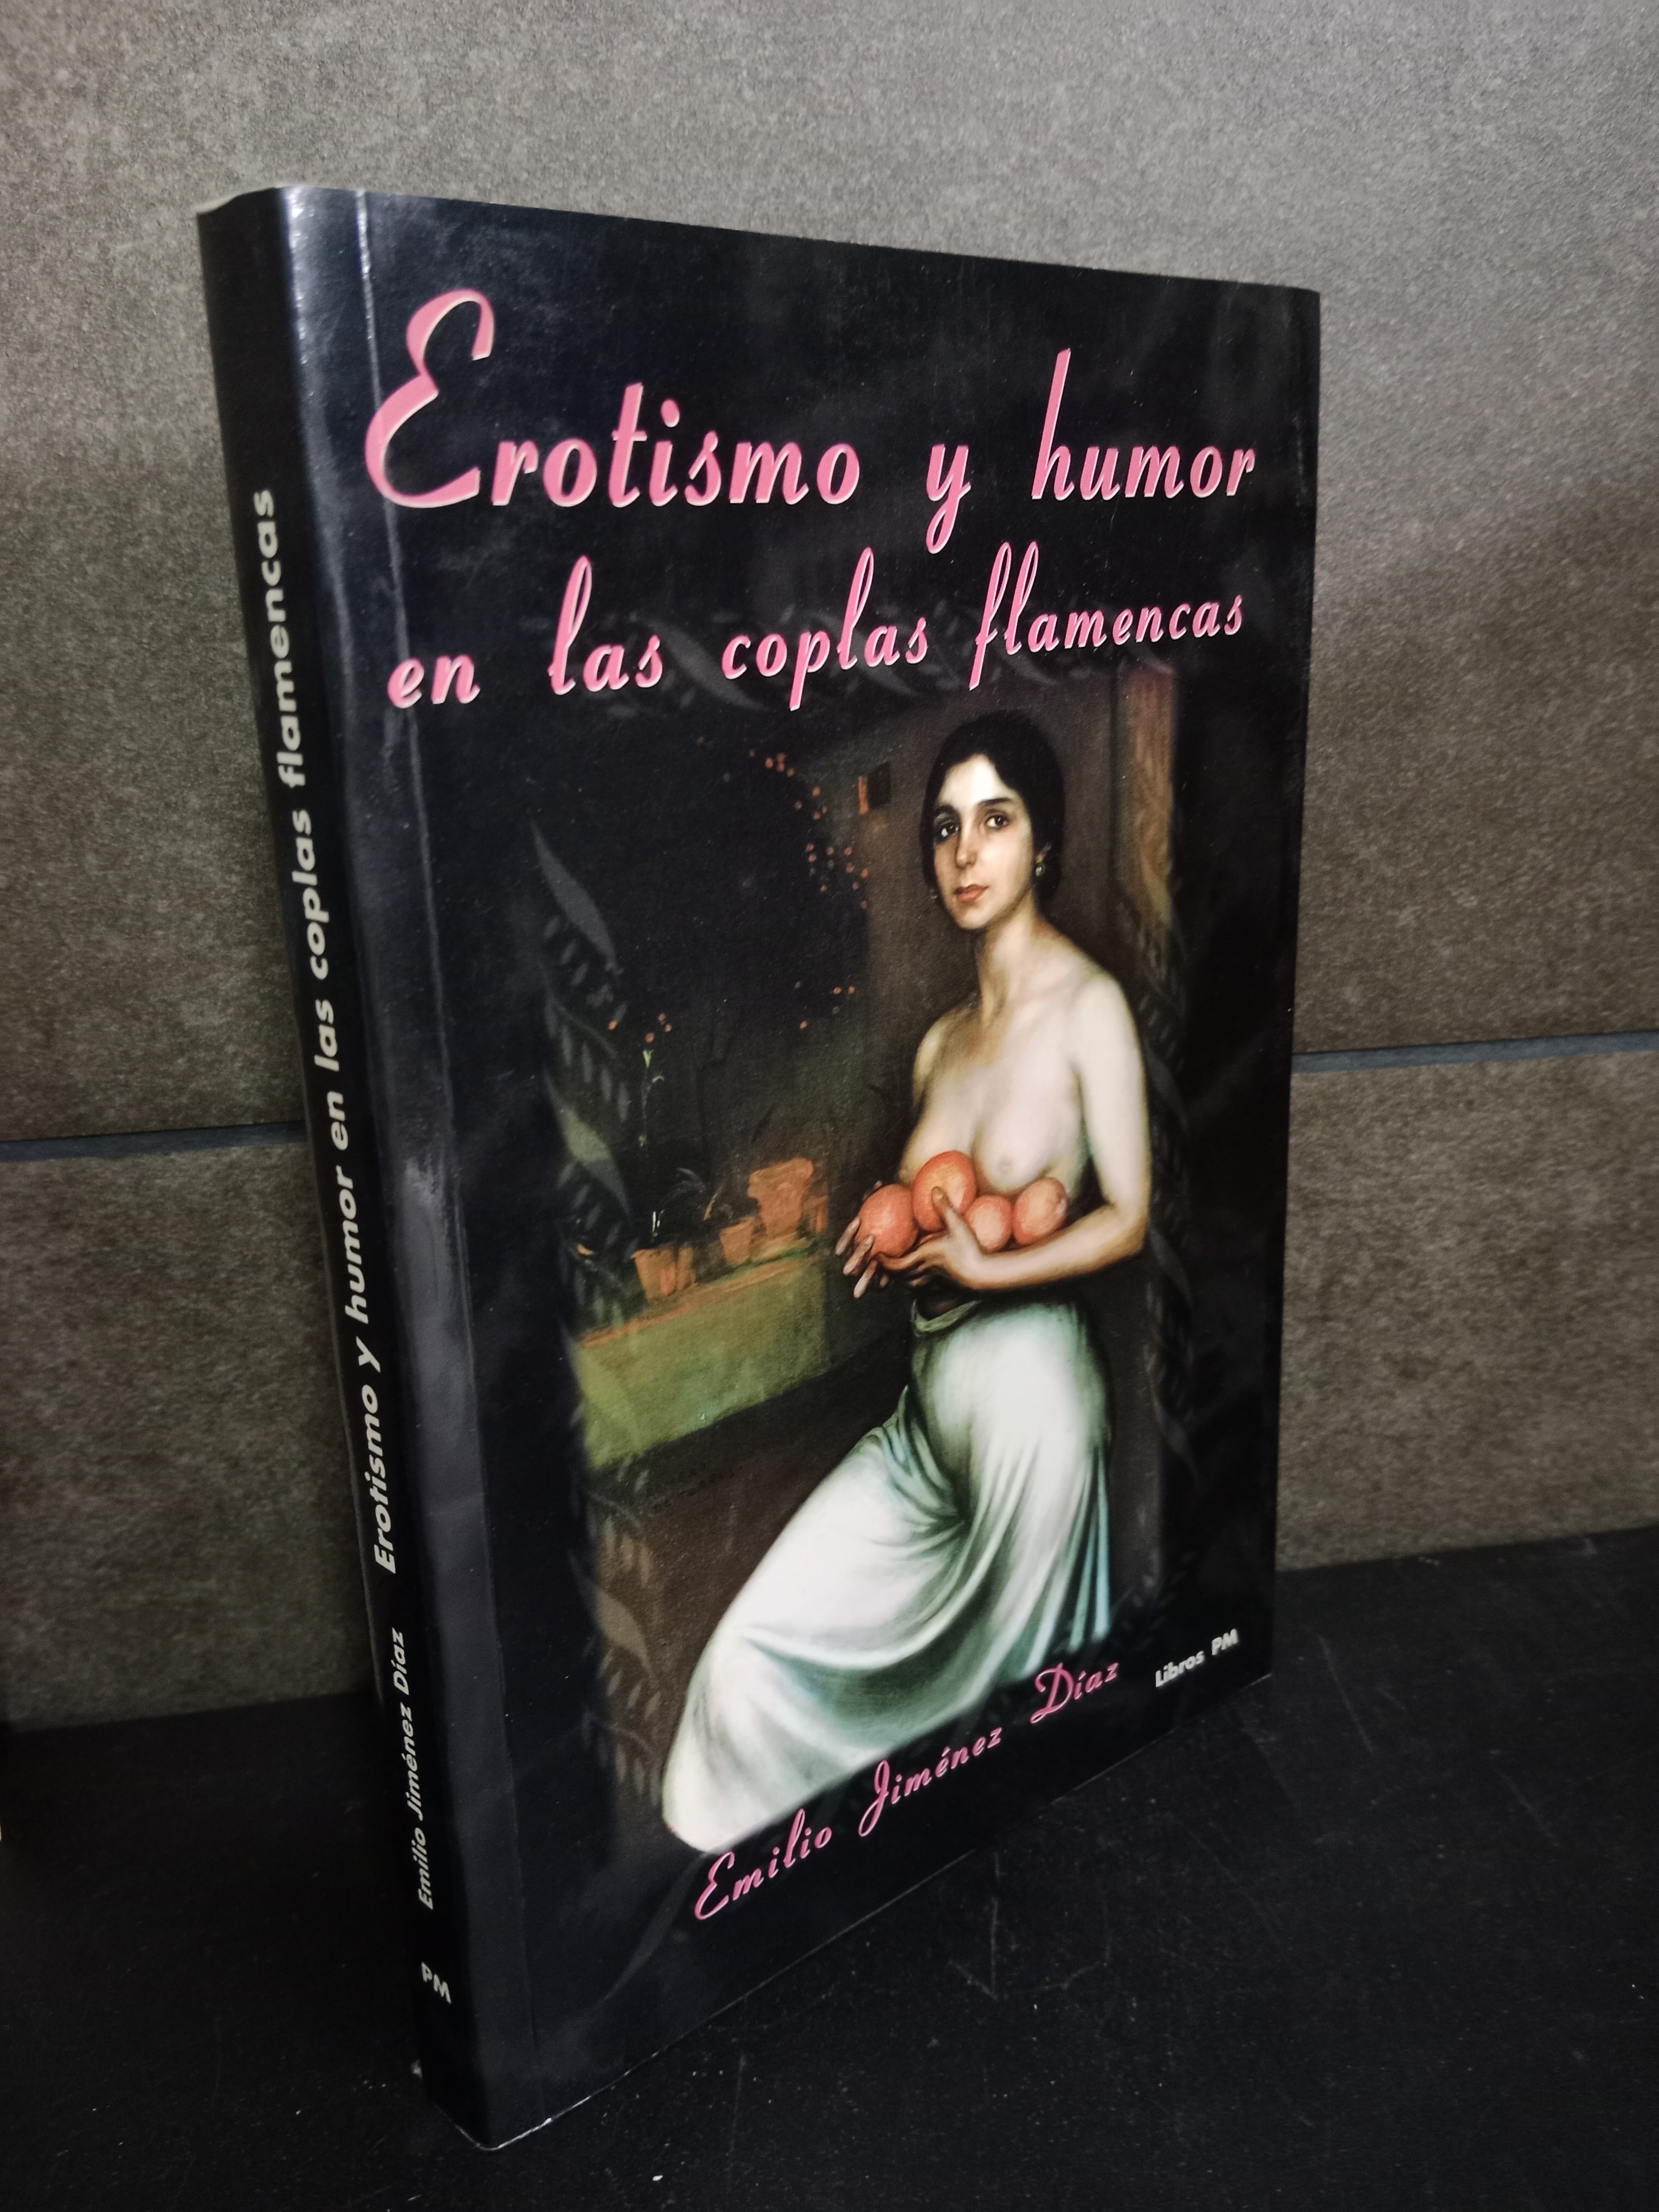 Erotismo y humor en las coplas flamencas (Flamenco). Emilio Jiménez Díaz. - Jiménez Díaz, Emilio